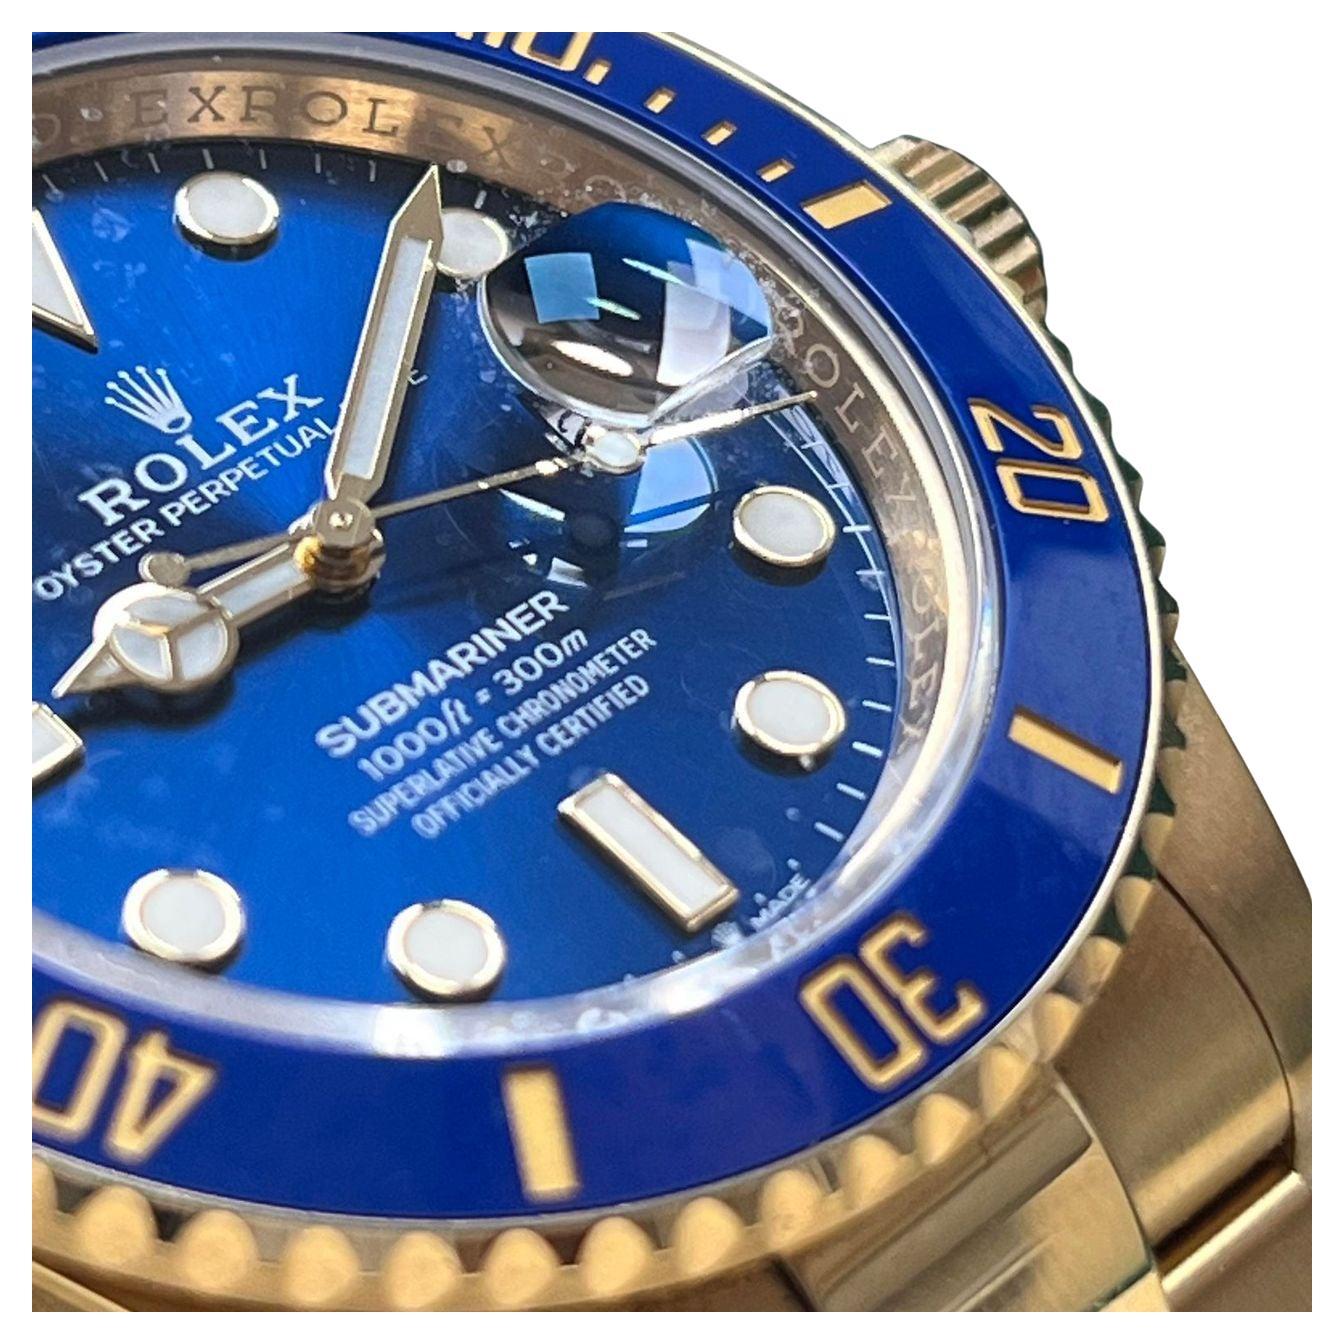 Die Rolex Gold Submariner 126618LB Blue ist der Inbegriff von Luxus und Handwerkskunst.

Dieser exquisite Zeitmesser besticht durch sein komplett goldenes Design, das Eleganz und Raffinesse ausstrahlt. Das leuchtend blaue Zifferblatt verleiht ihr